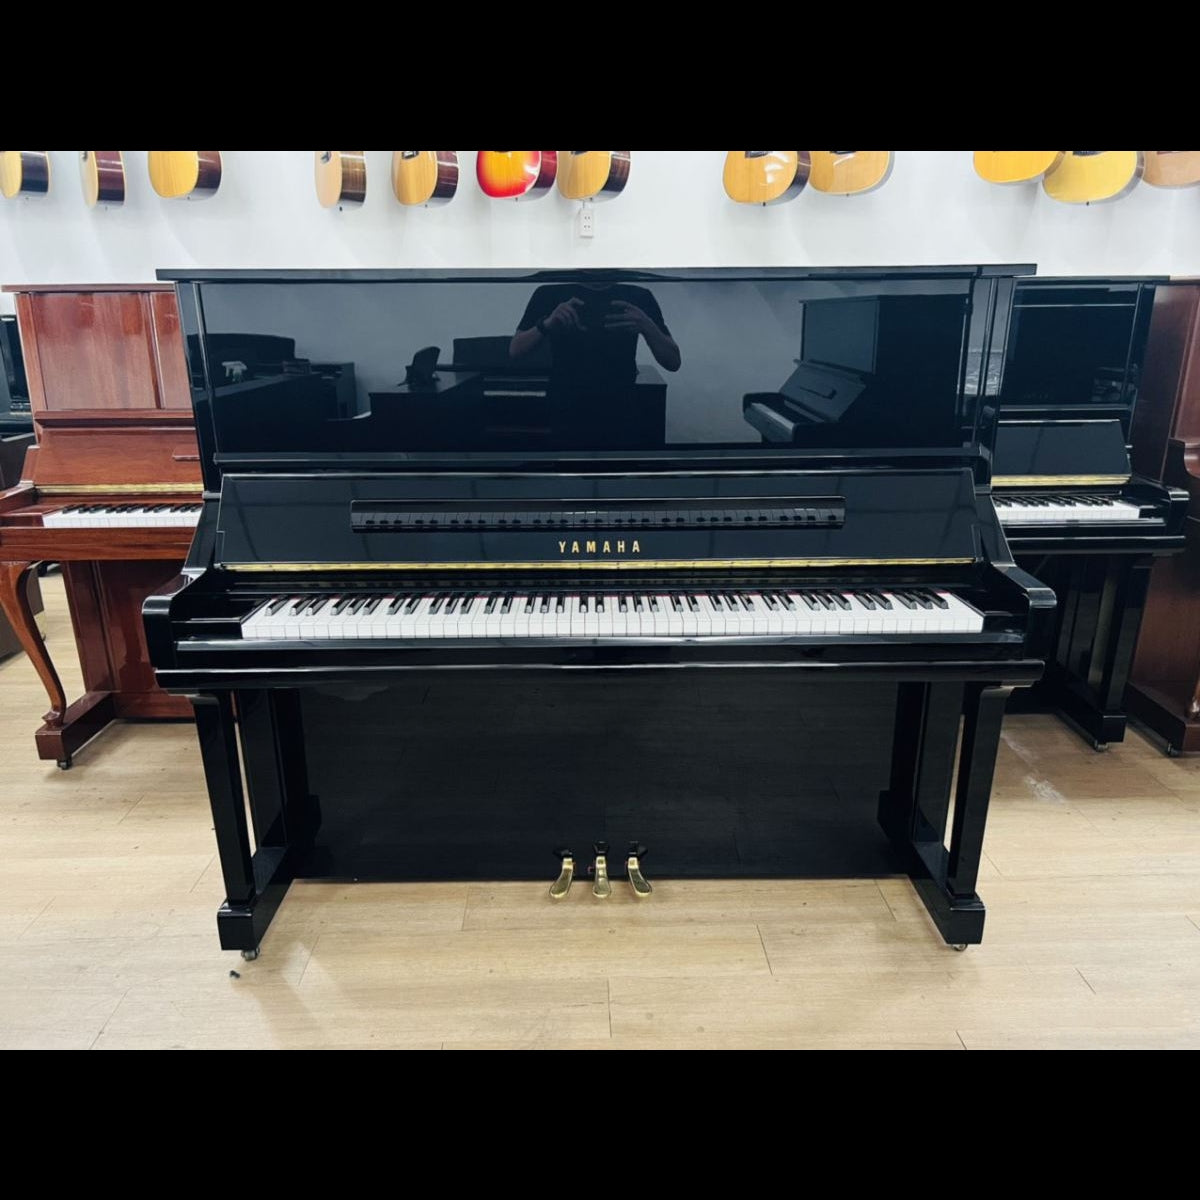 Đàn Piano Cơ Upright Yamaha YU33 PE - Qua Sử Dụng - Việt Music